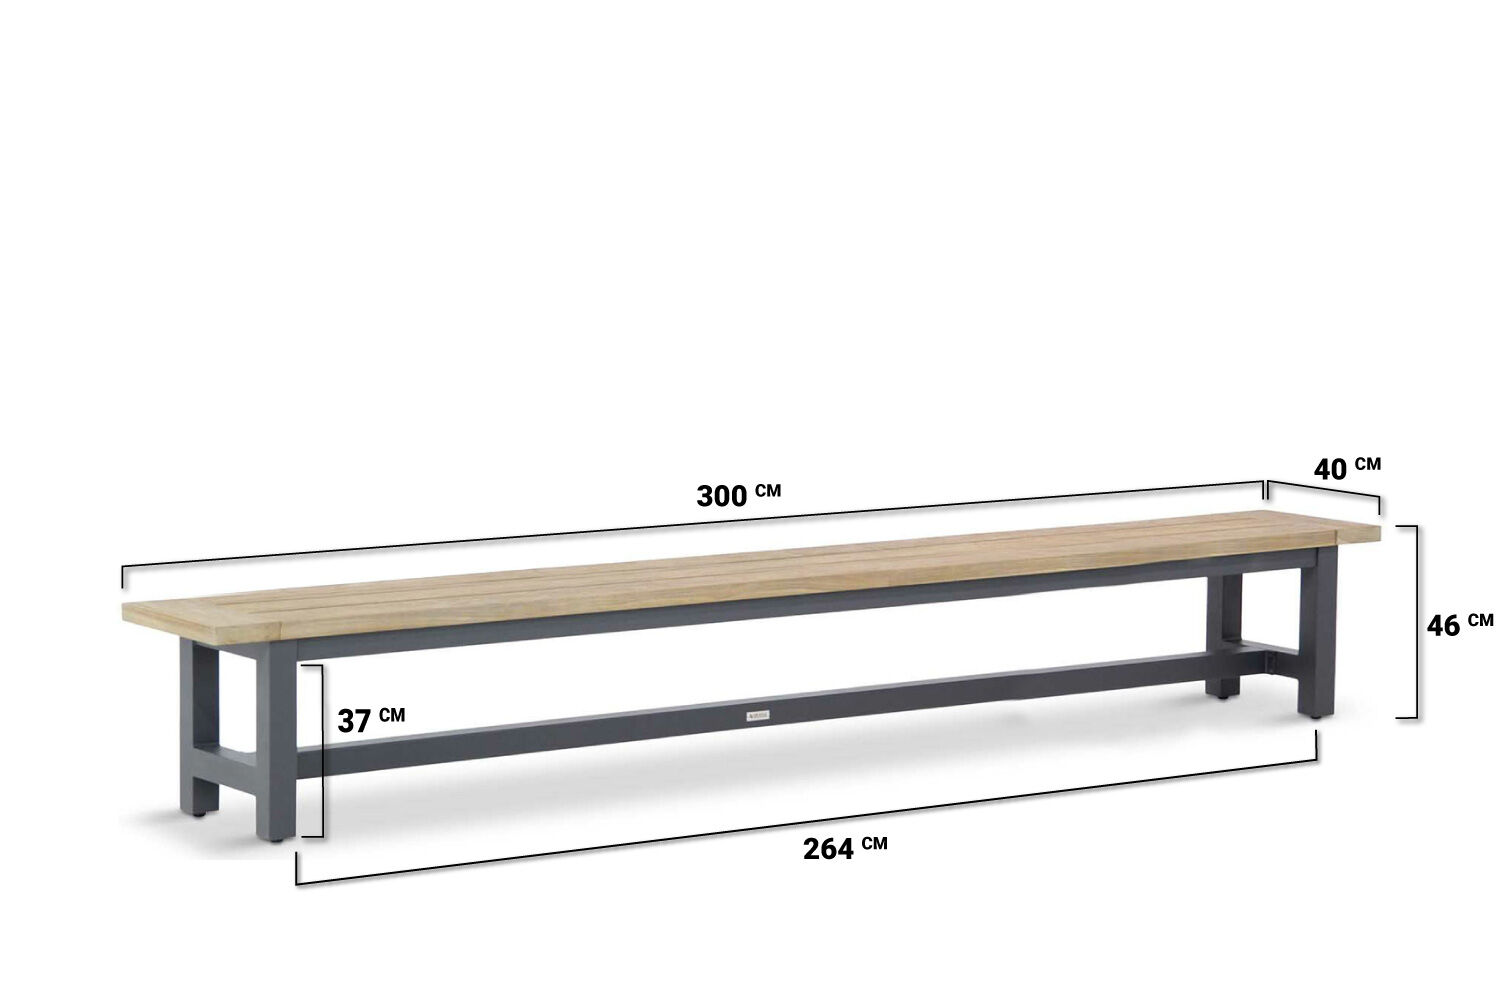 Lifestyle San Francisco 300 cm table antracite alu / teak Part 2/2: antracite aluminium legs 